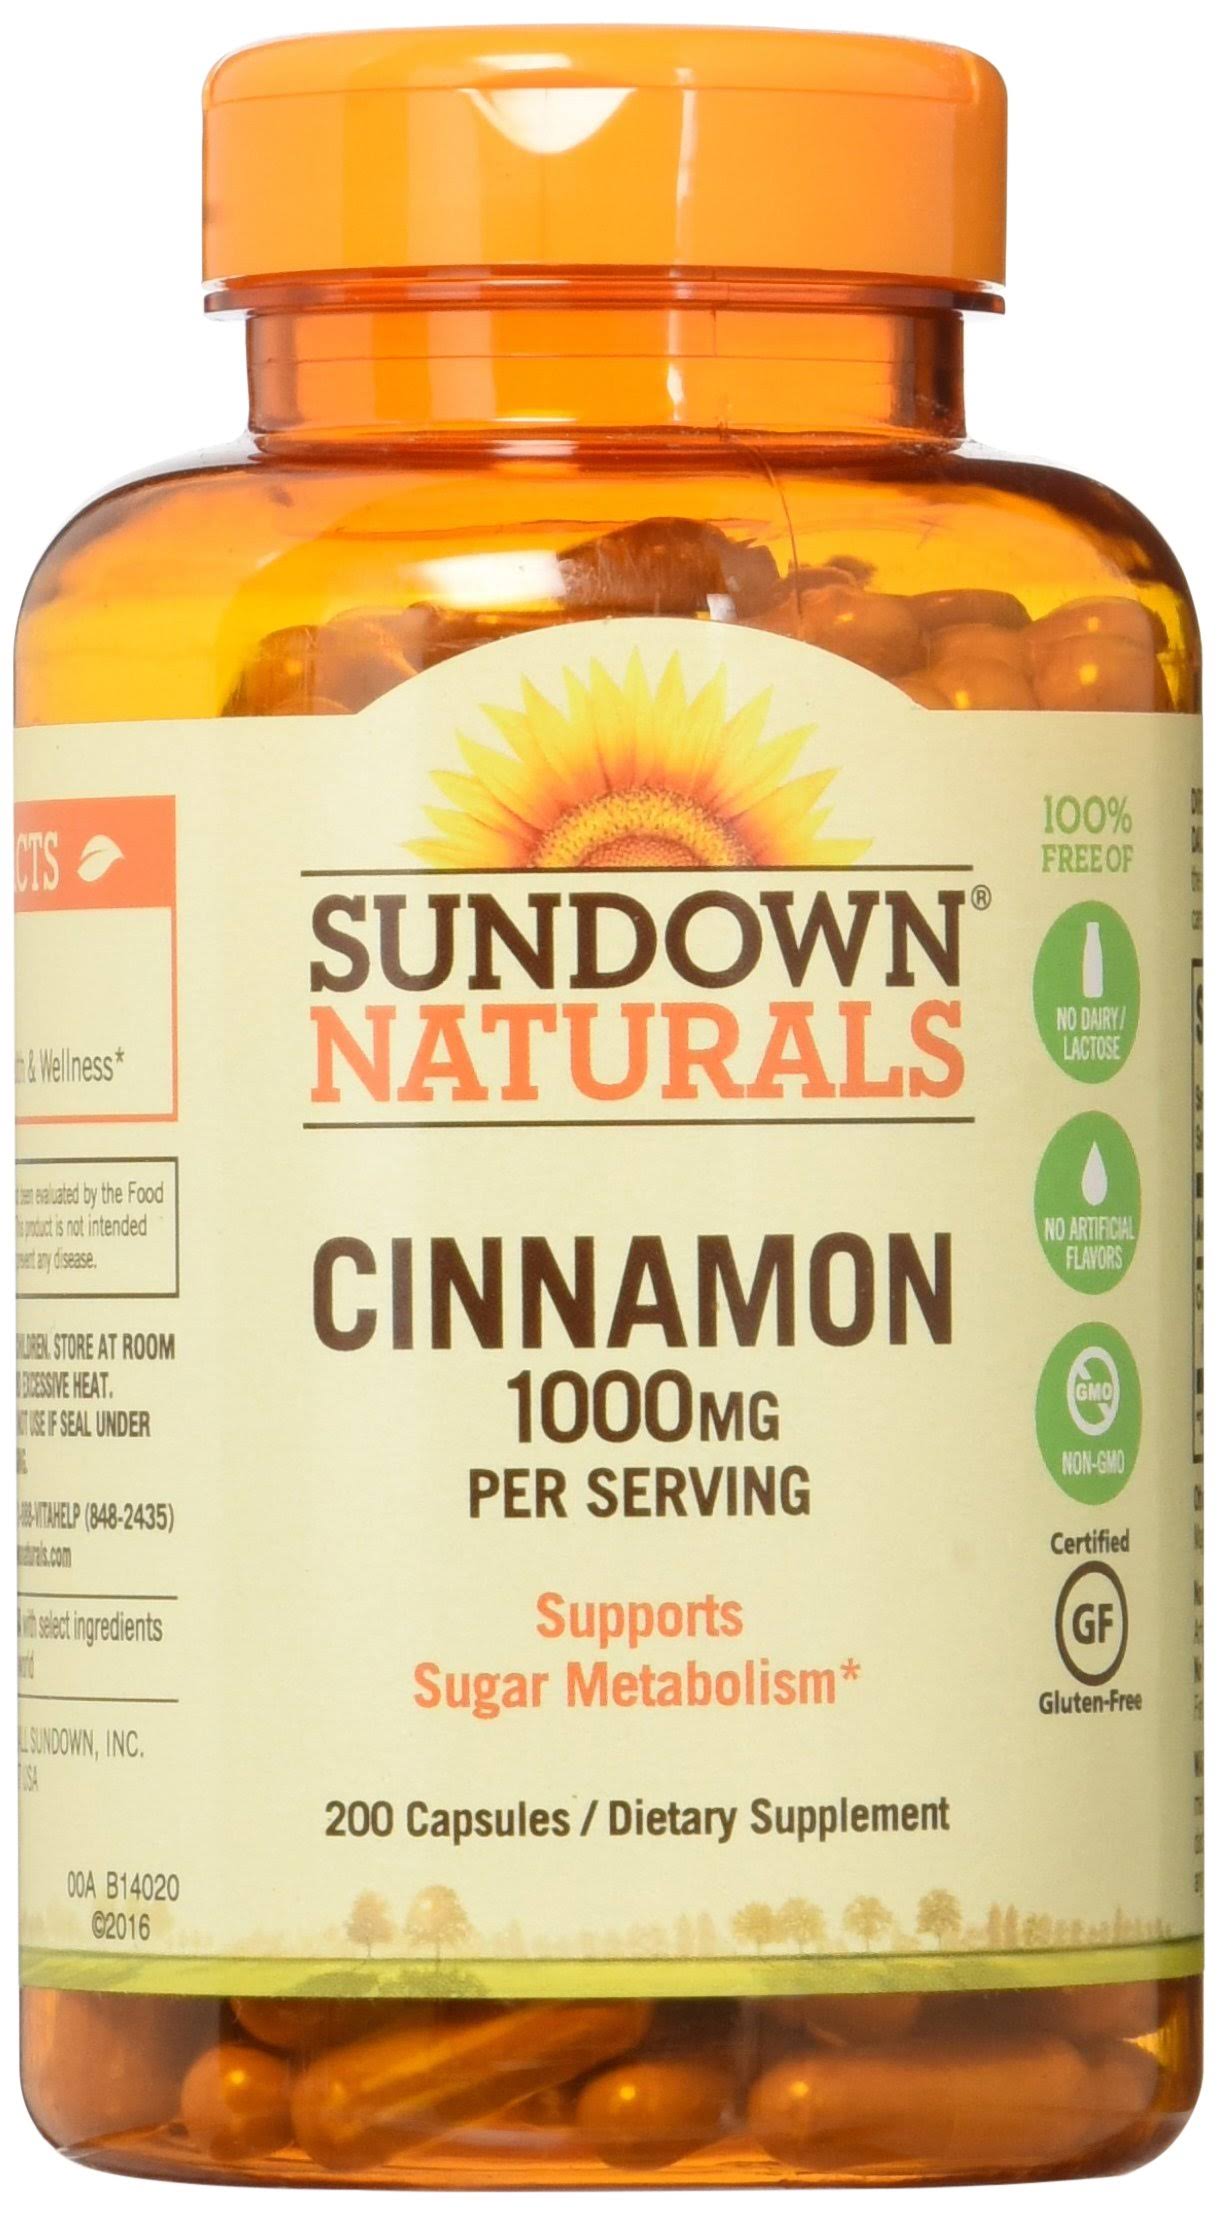 Sundown Naturals Cinnamon Dietary Supplement - 1000mg, 200 Capsules